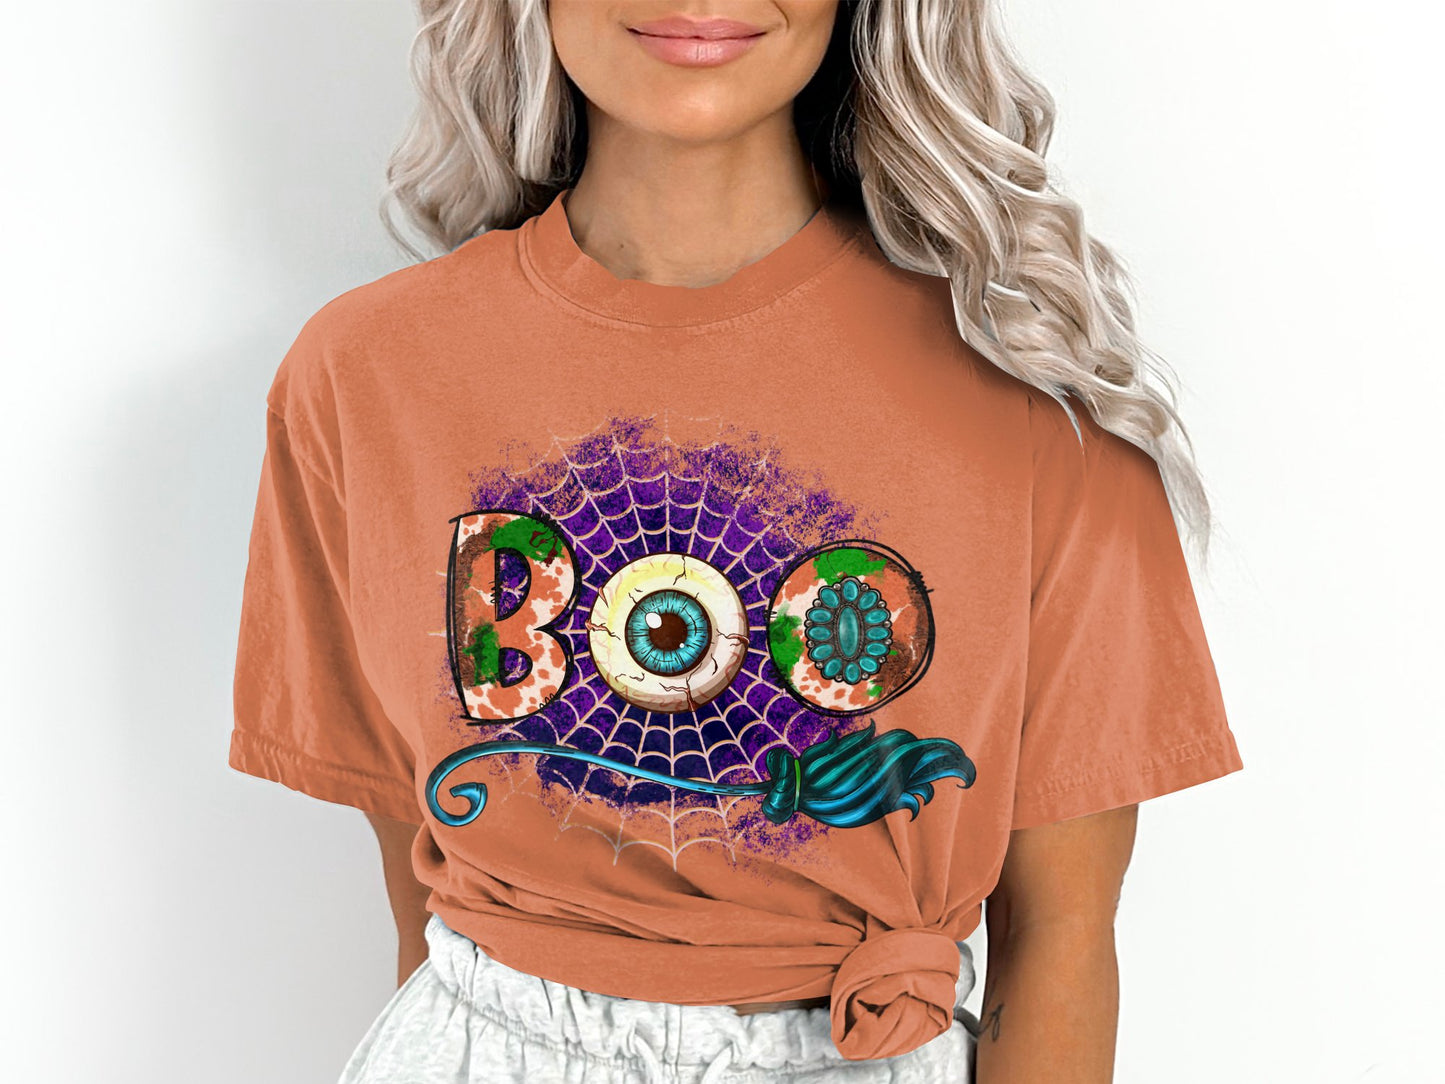 Women's Boo Halloween T-Shirt, Comfort Colors Brand Shirt